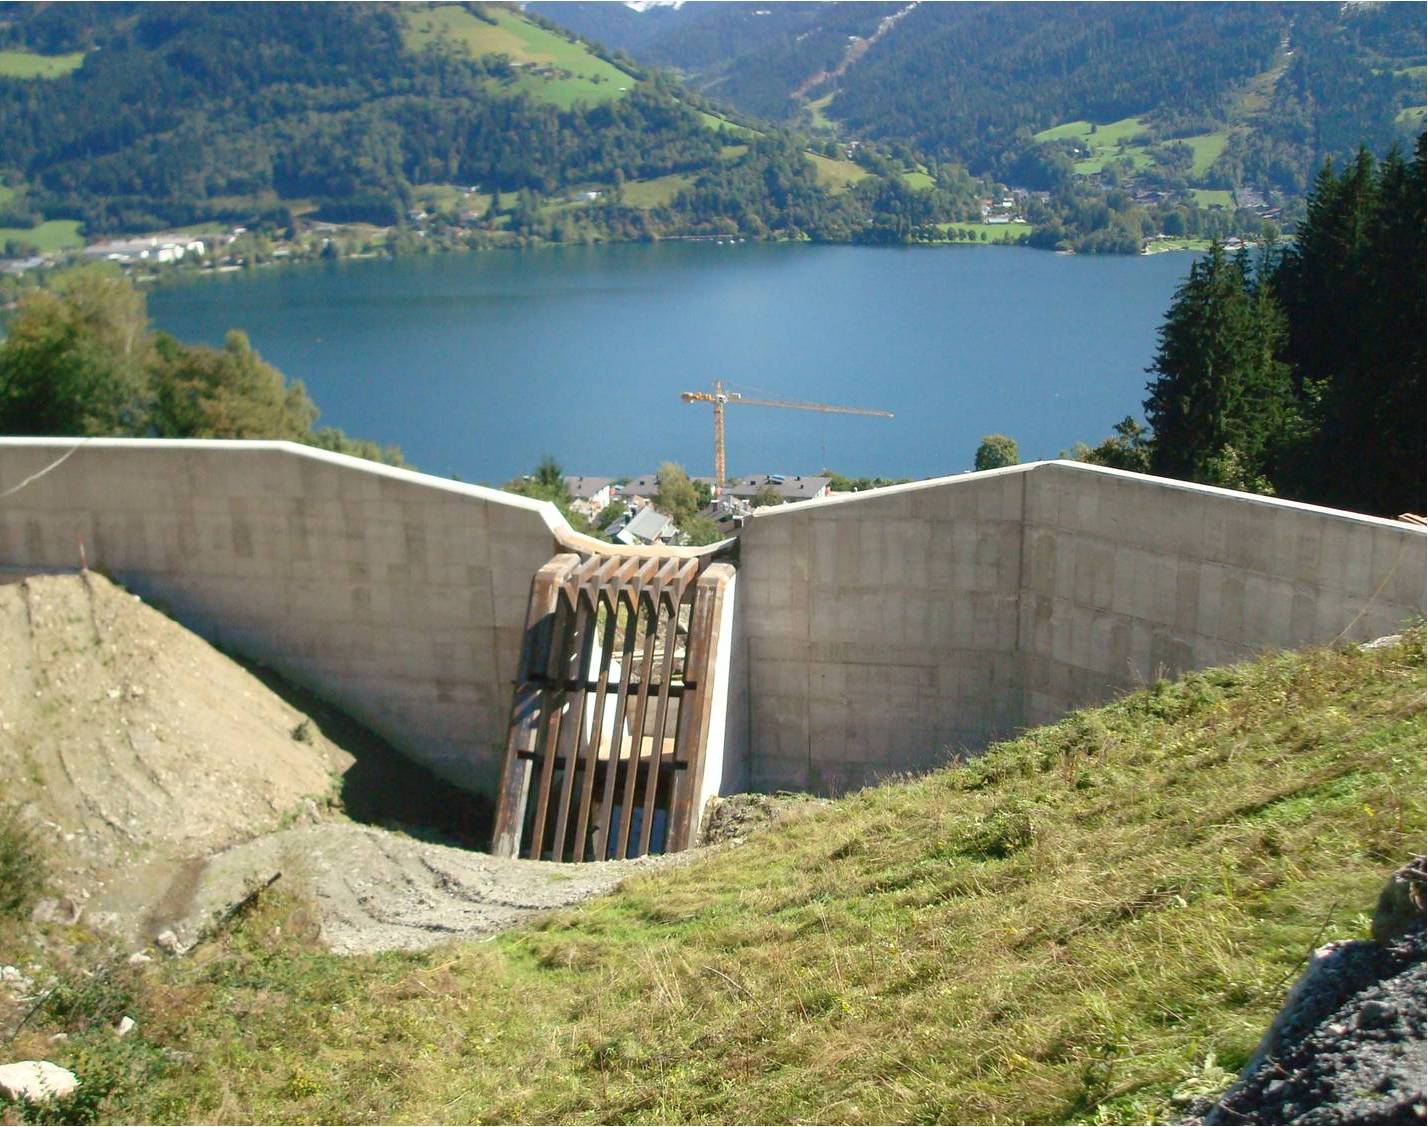 Dachverband Schutzwassergenossenschaften Salzburg